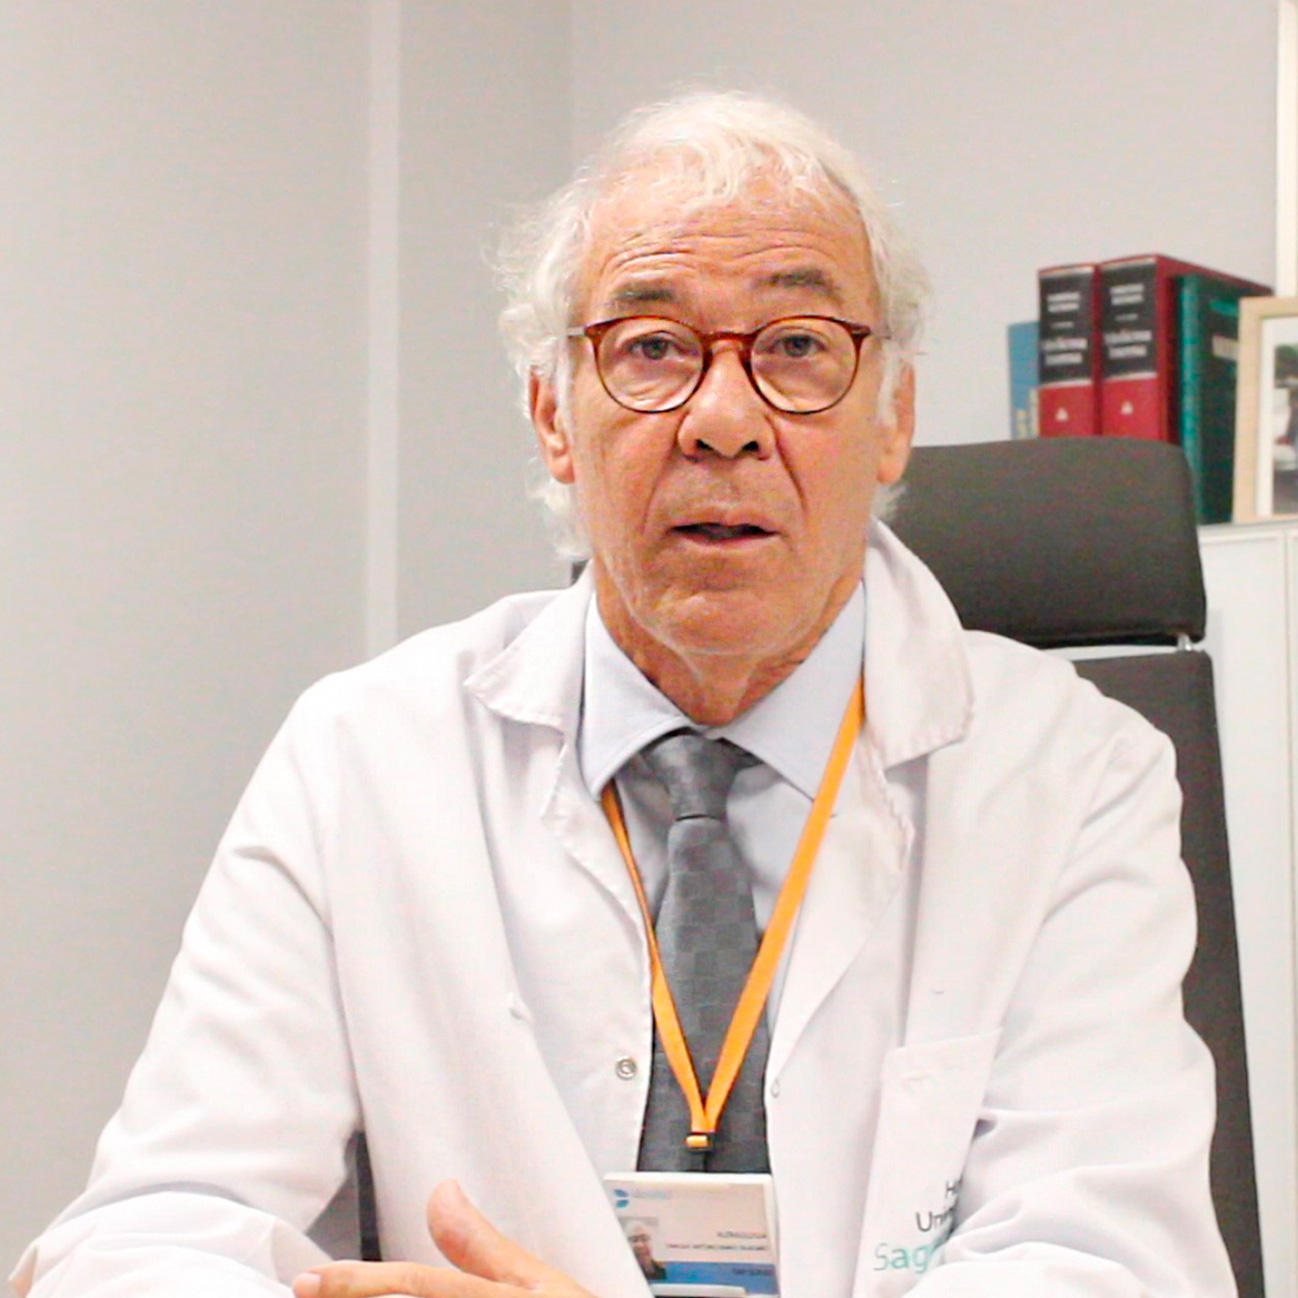 Alergias: Entrevista al Dr. Enric Martí